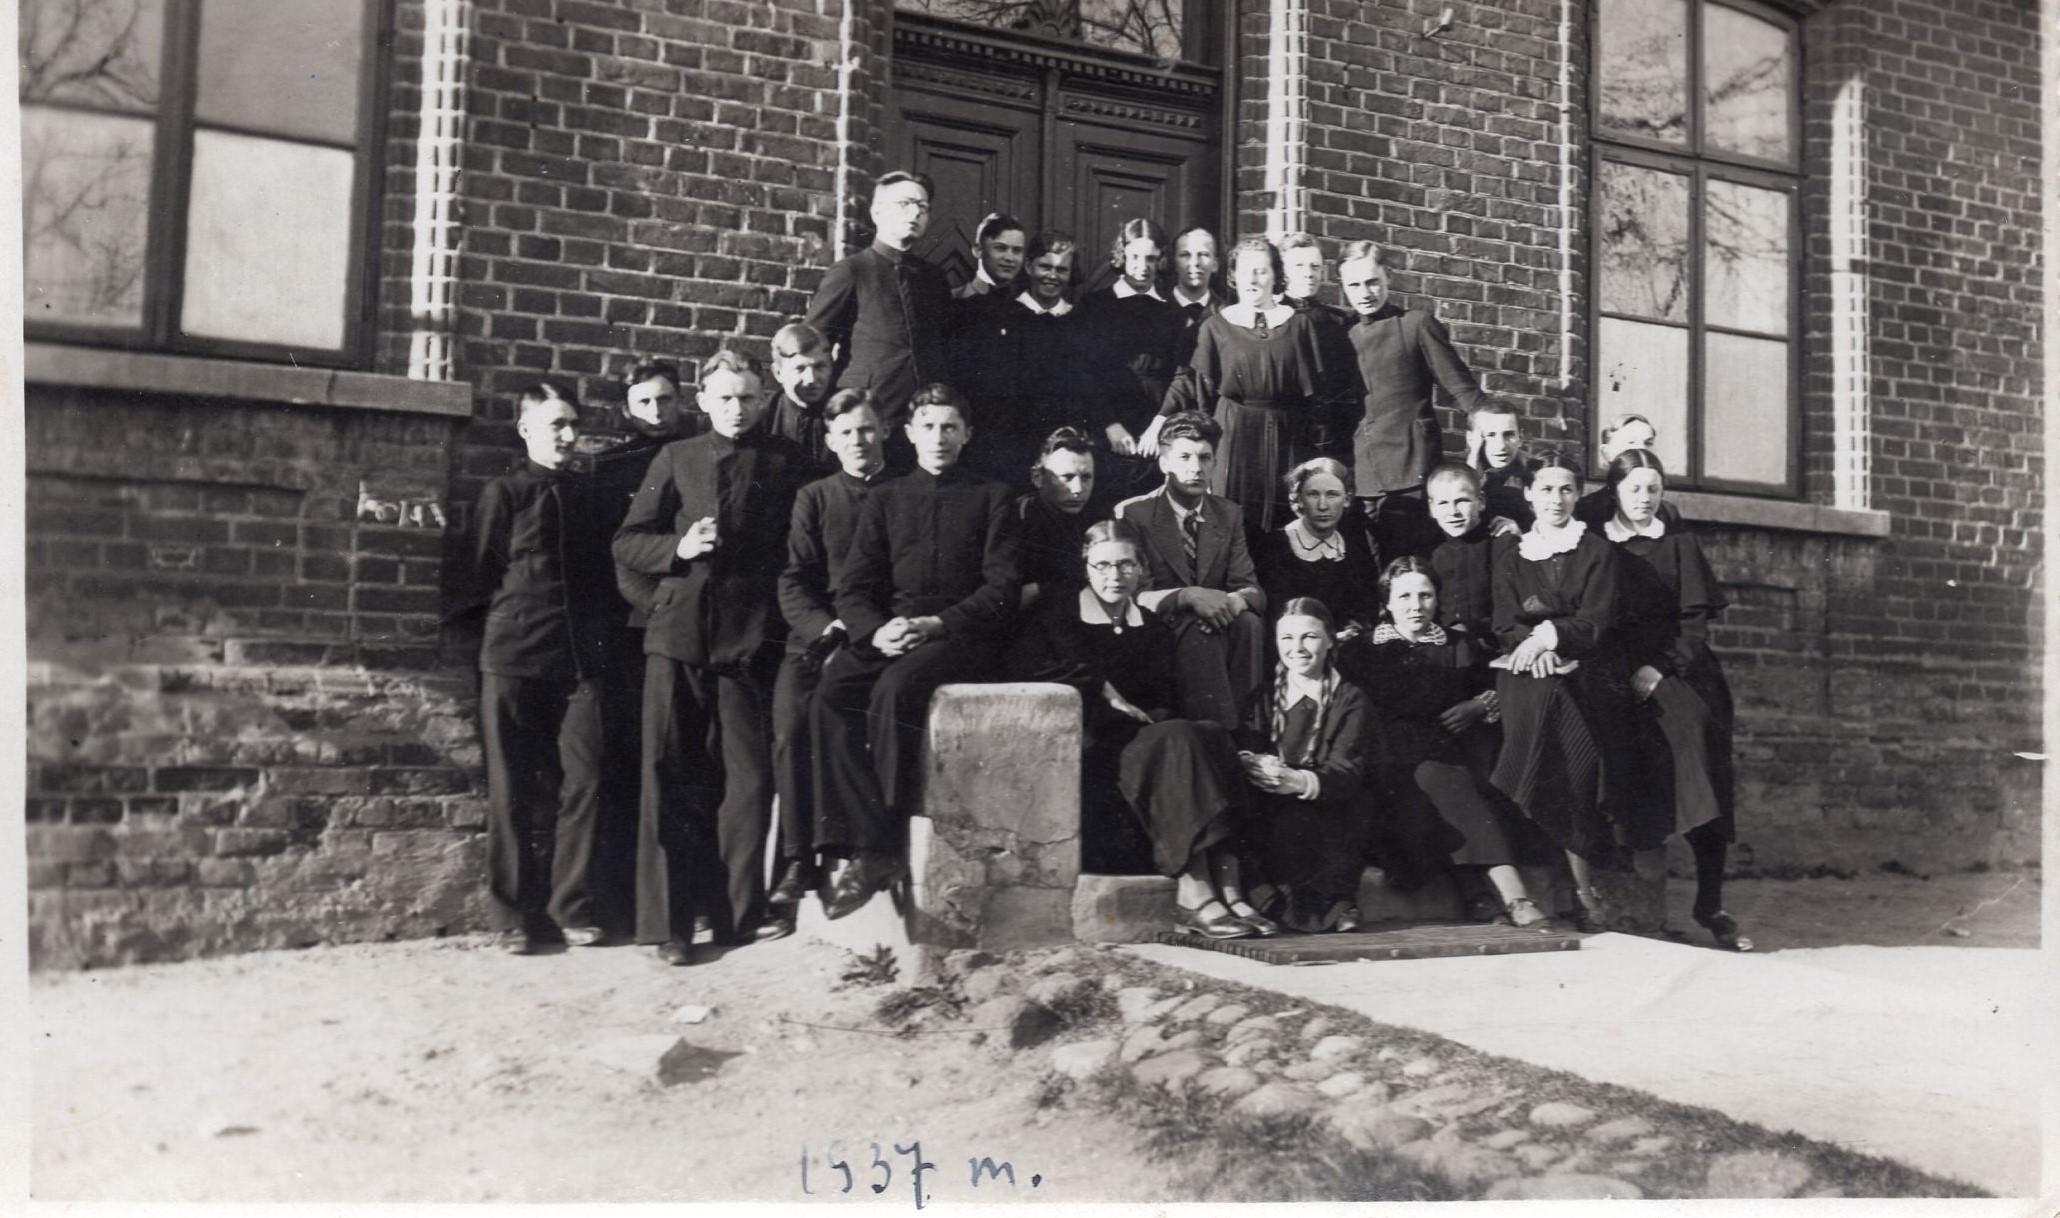 Lietuvių kalbos mokytojas B. Palekas (centre), šalia jo – K. Bradūnas, J. Švabaitė sėdi ant laiptelio trečia iš dešinės. Vilkaviškis, 1937 m.  MLLM 109179